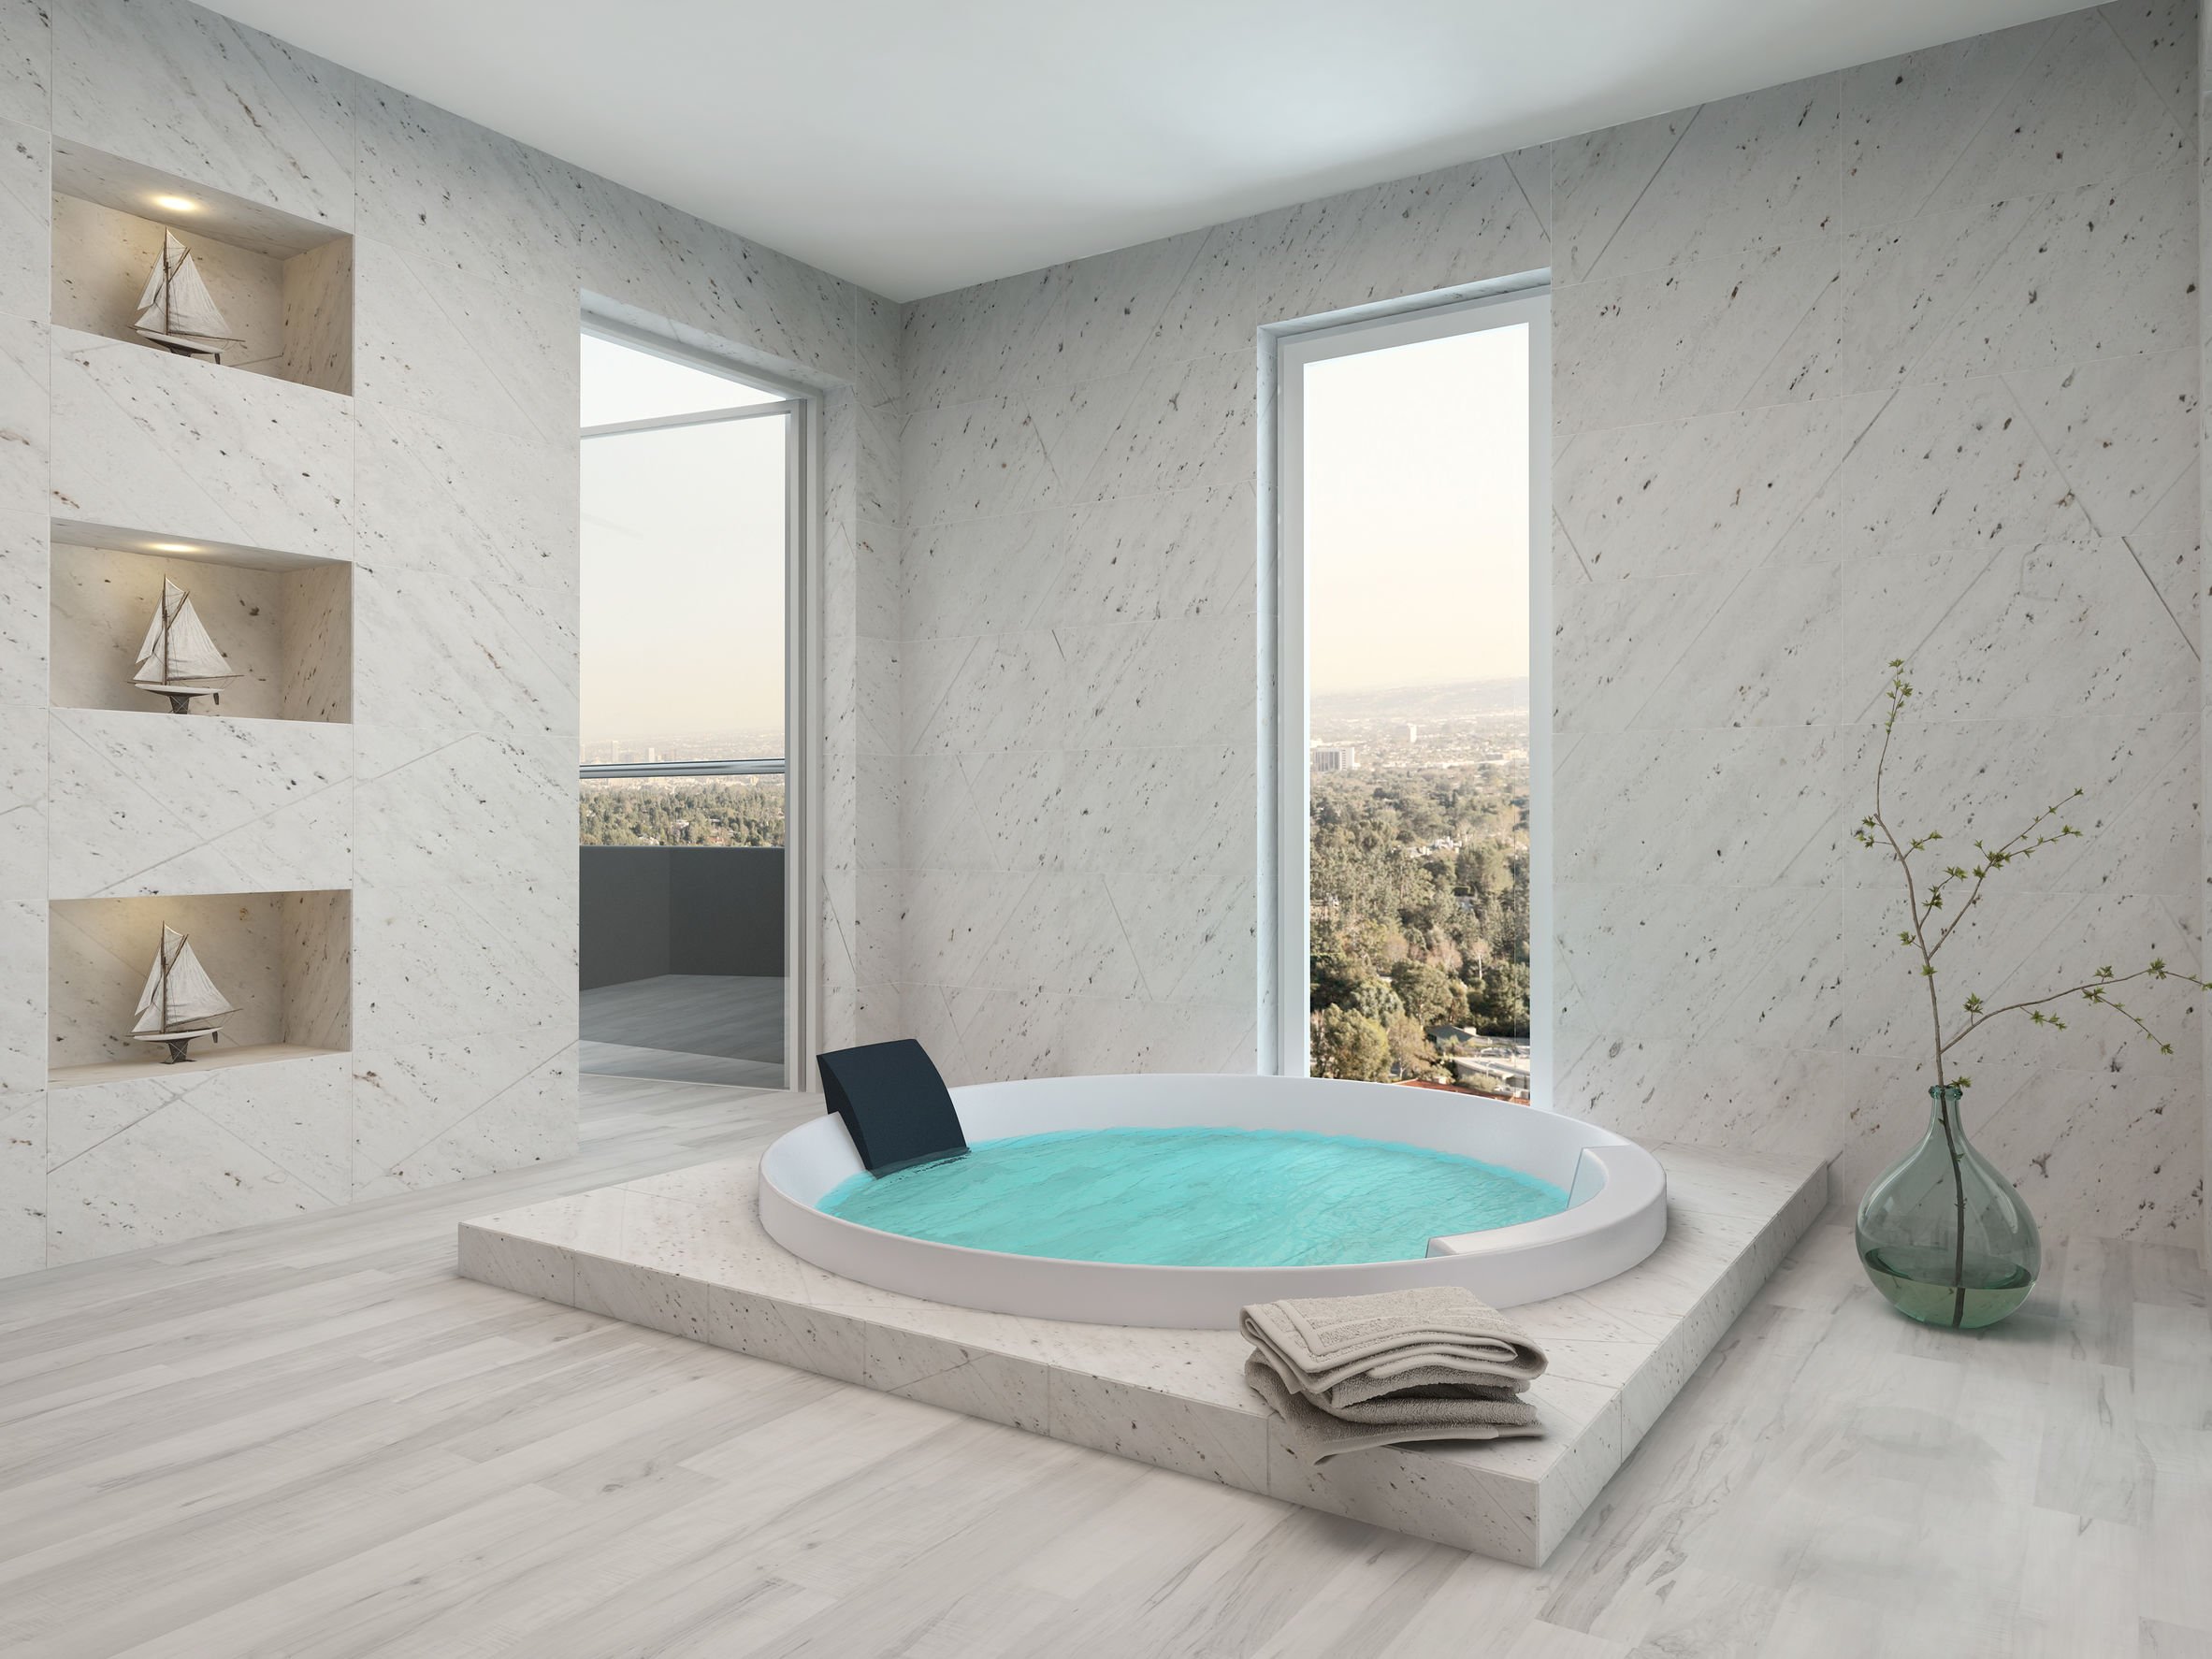 Salle de bain moderne avec parquet au sol et jacuzzi